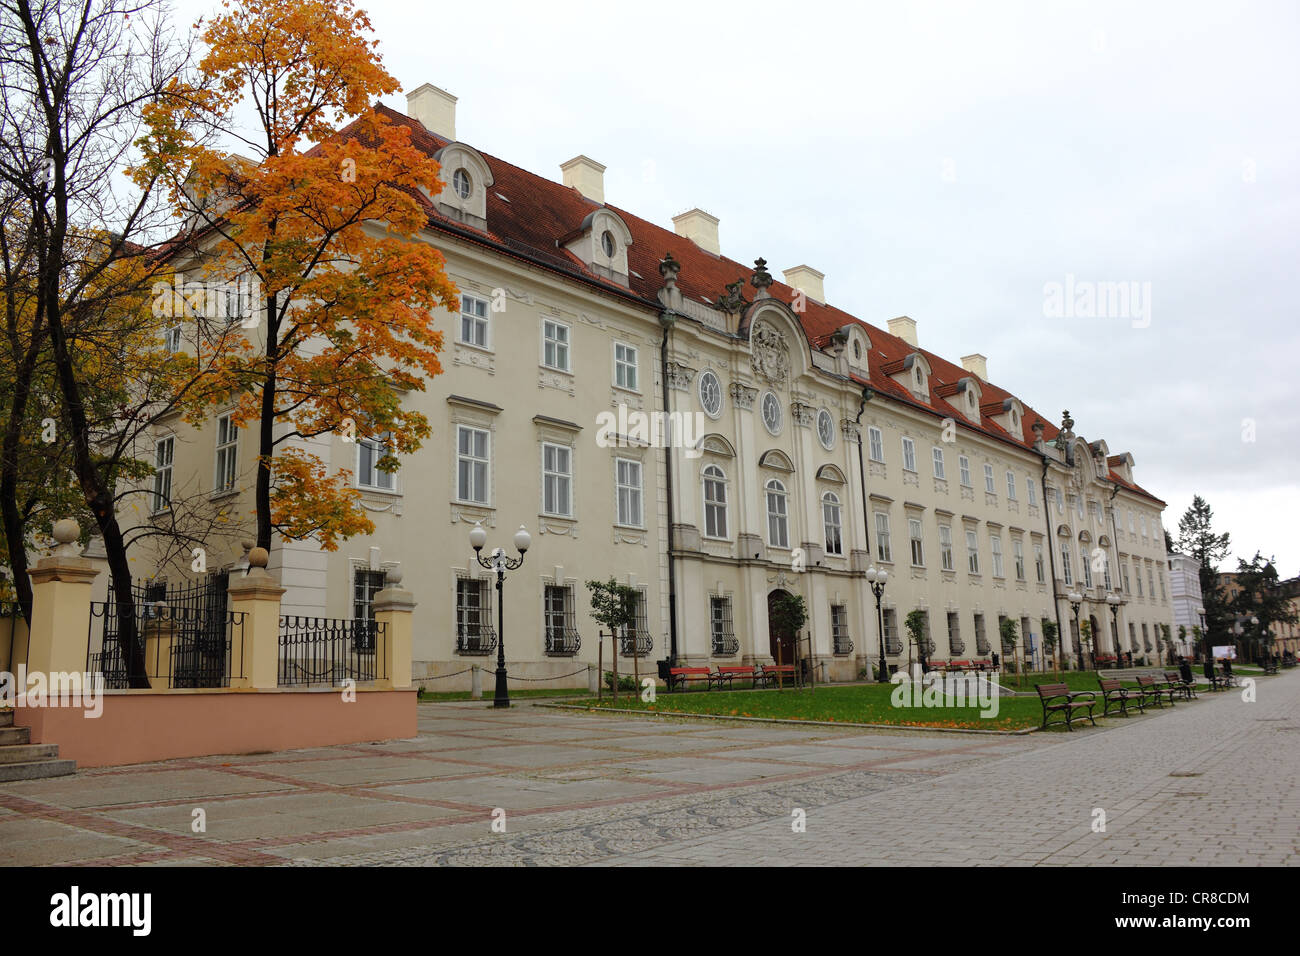 Schaffgotsch Palace Stock Photo